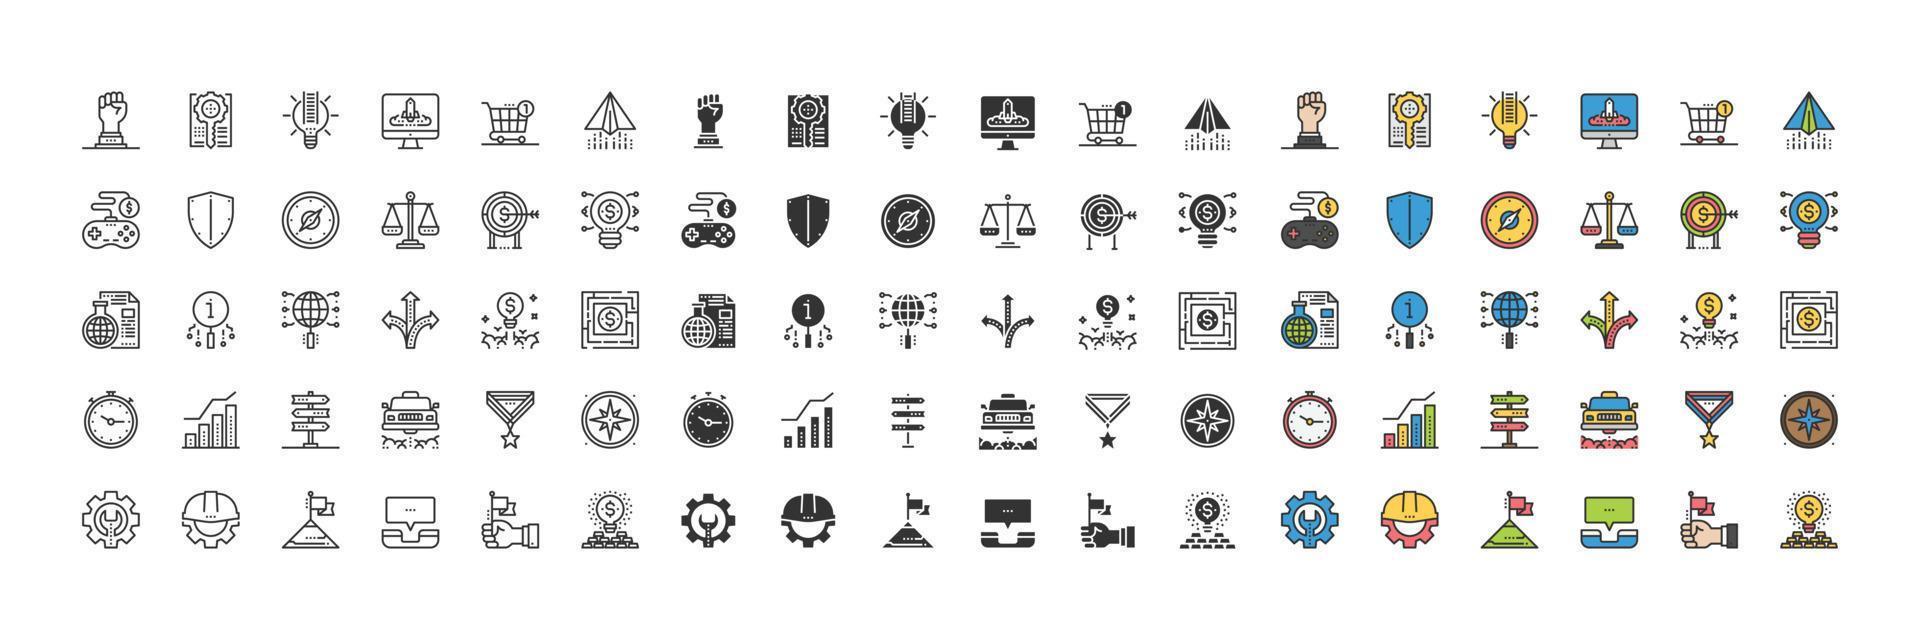 attività commerciale simboli elementi icone , le persone, gestione ,pensare vettore